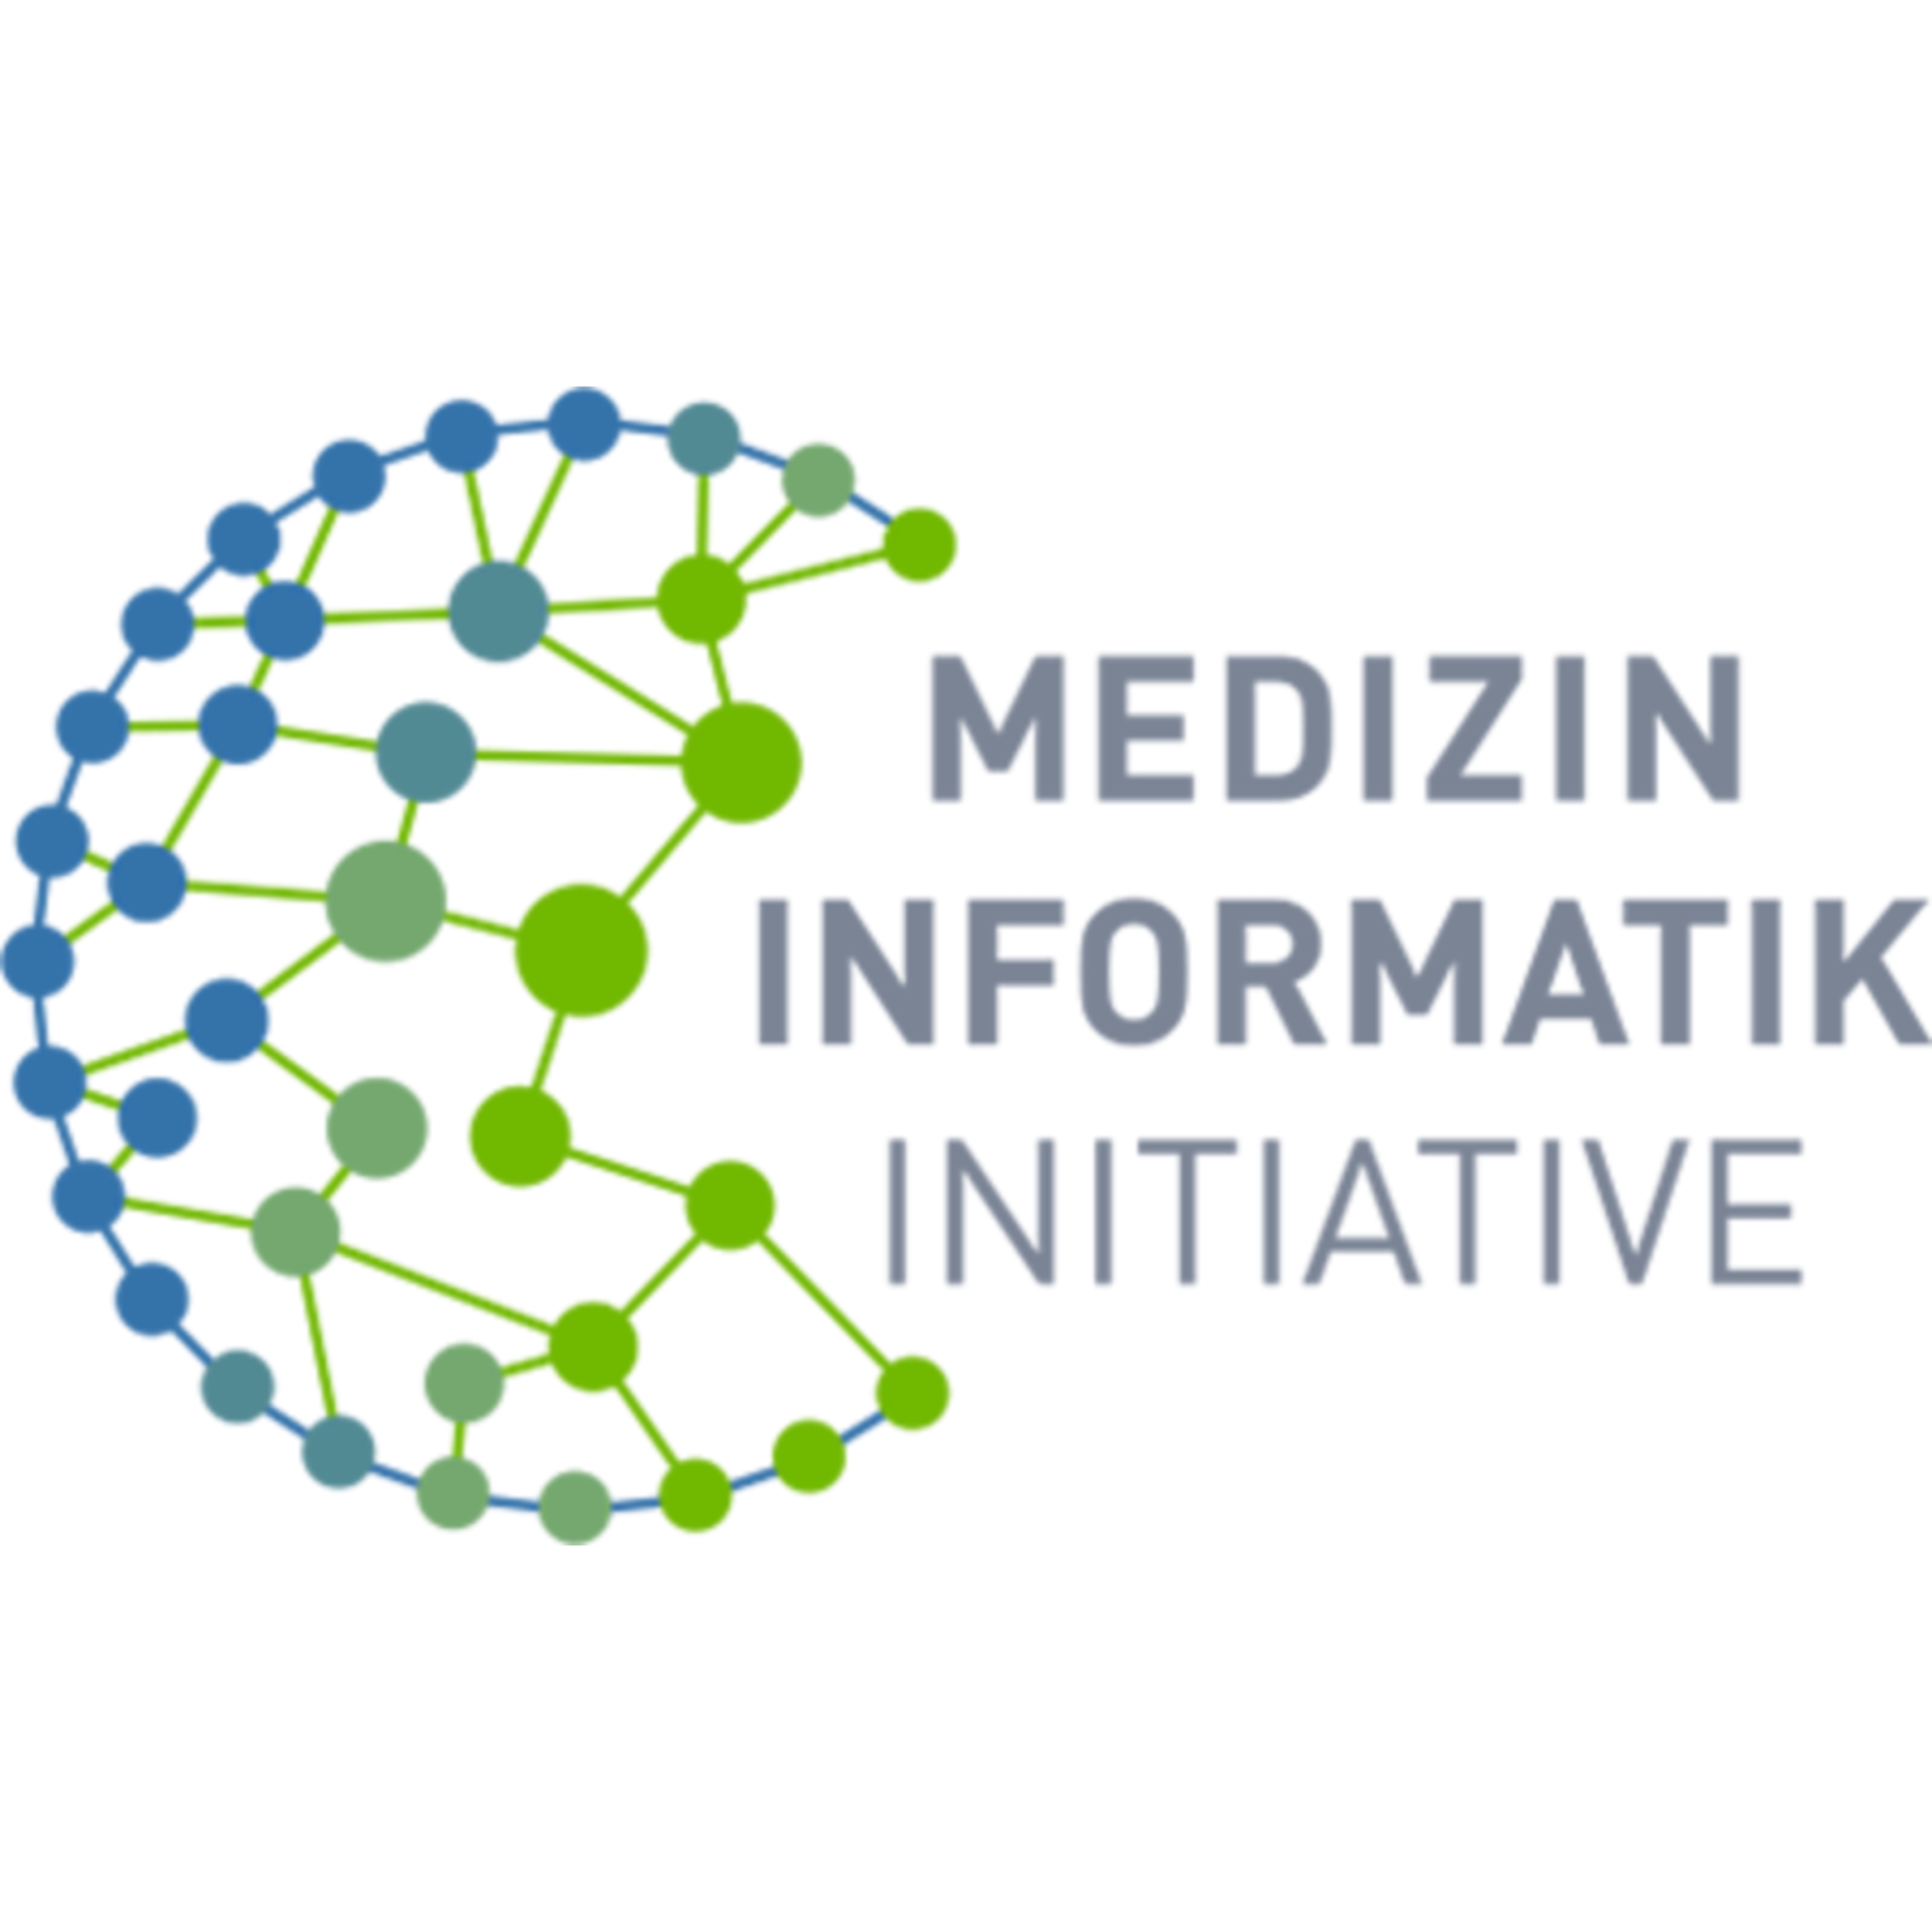 Zu sehen ist das Logo der Medizininformatik-Initiative. Es handelt sich um eine Wort-Bild-Marke, die ein Netzwerk symbolisiert.